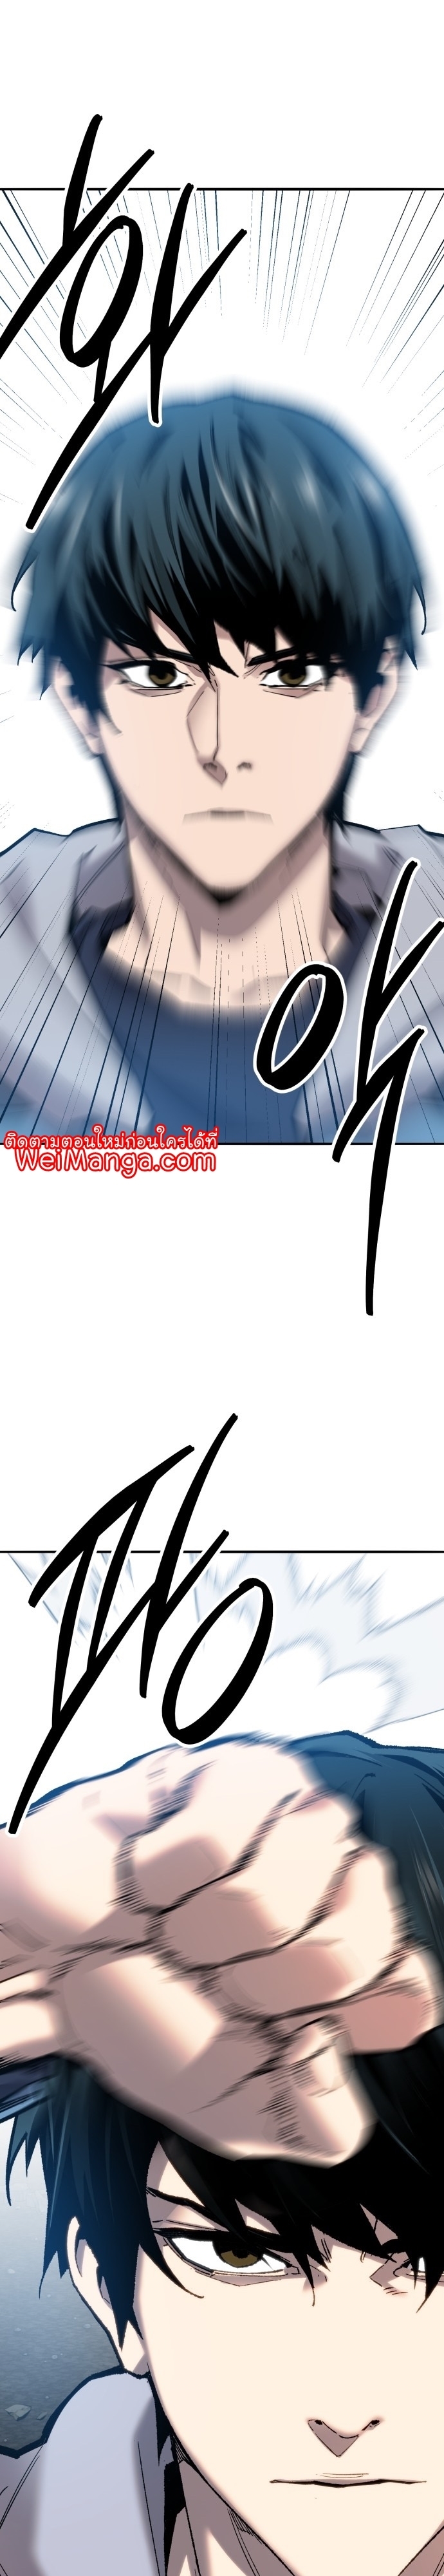 Manga Manhwa Wei Limit Braker 115 (15)